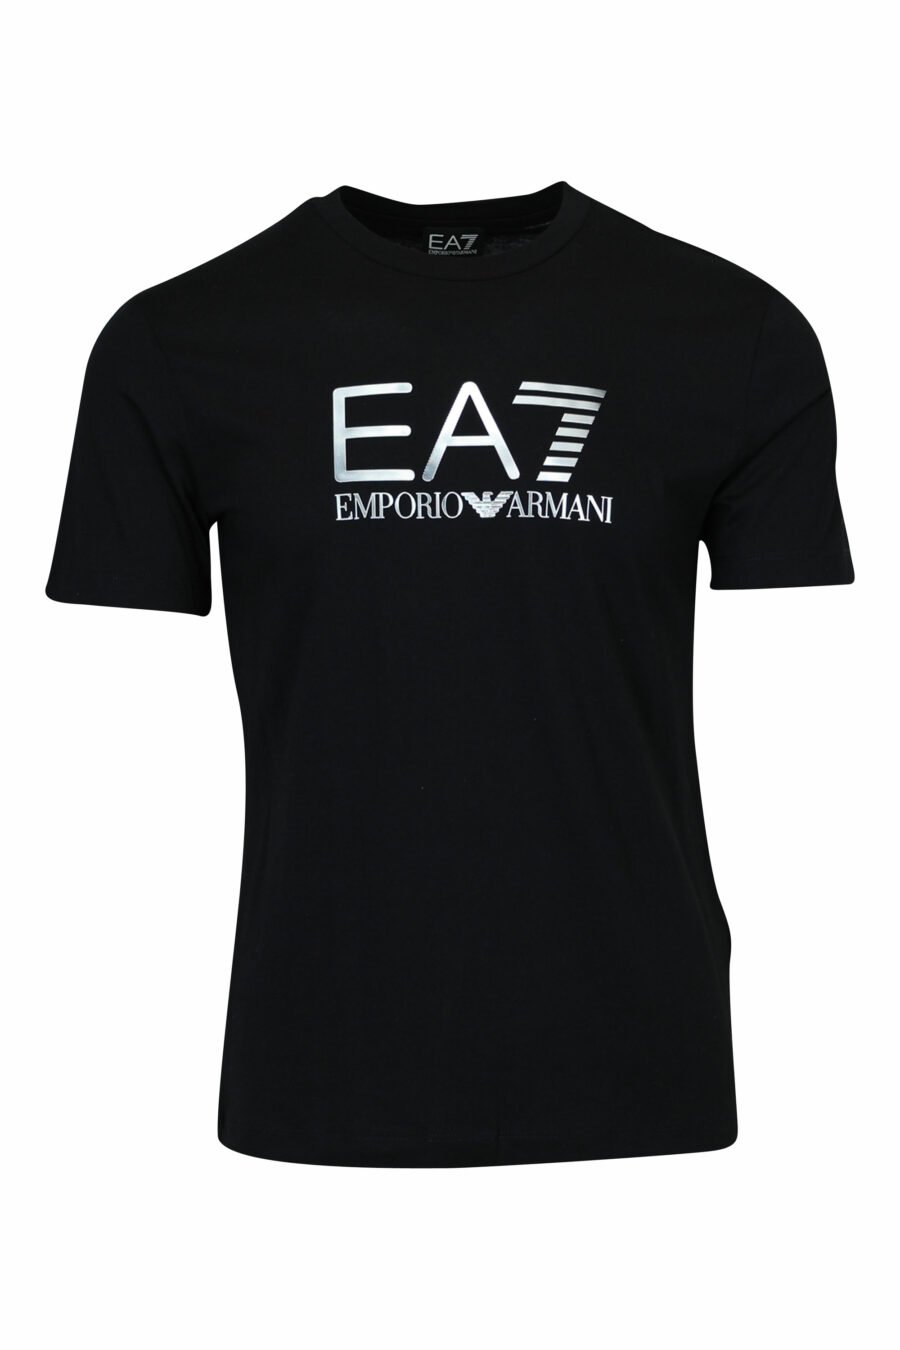 Schwarzes T-Shirt mit "lux identity" Maxilogo im Farbverlauf - 8058947508099